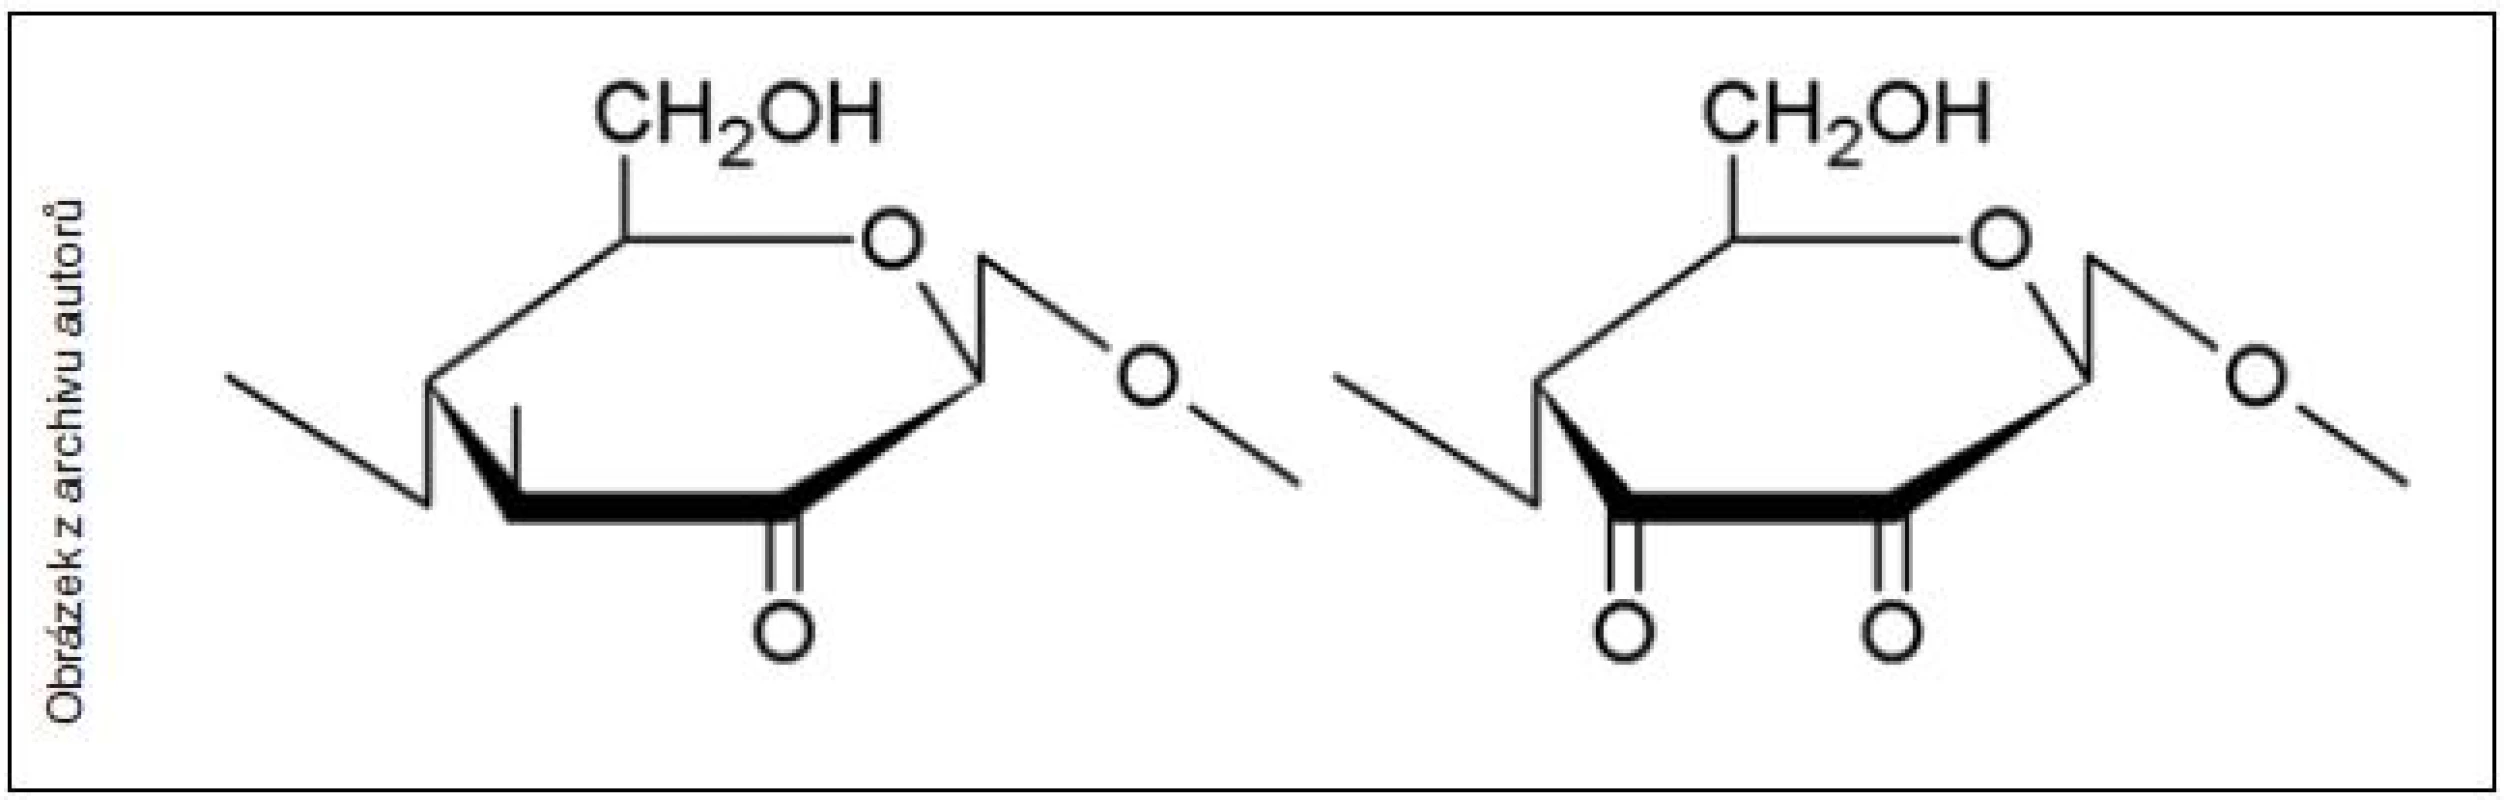 Vedlejší produkty oxidace celulózy – keto skupiny, které jsou významnou příčinou nestability oxidované celulózy ve fyziologickém prostředí